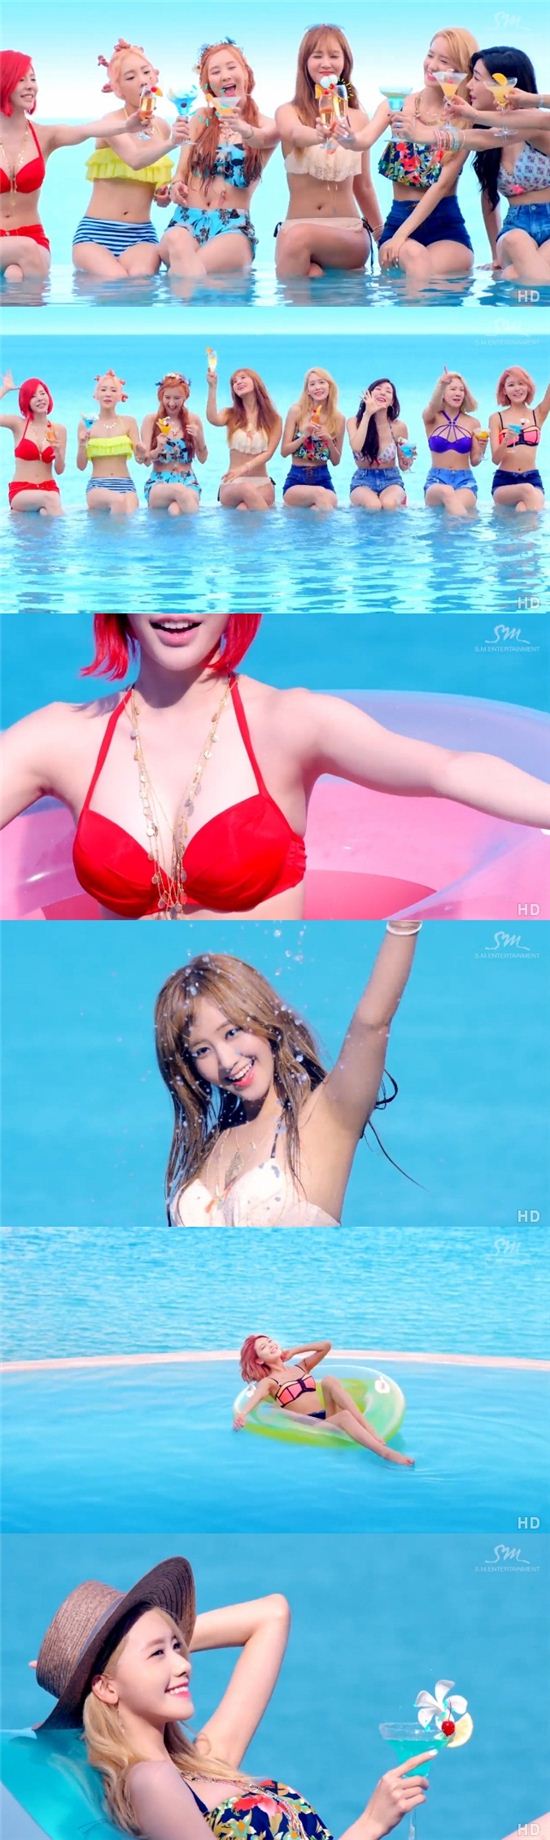 소녀시대 '파티' 뮤직비디오 캡쳐